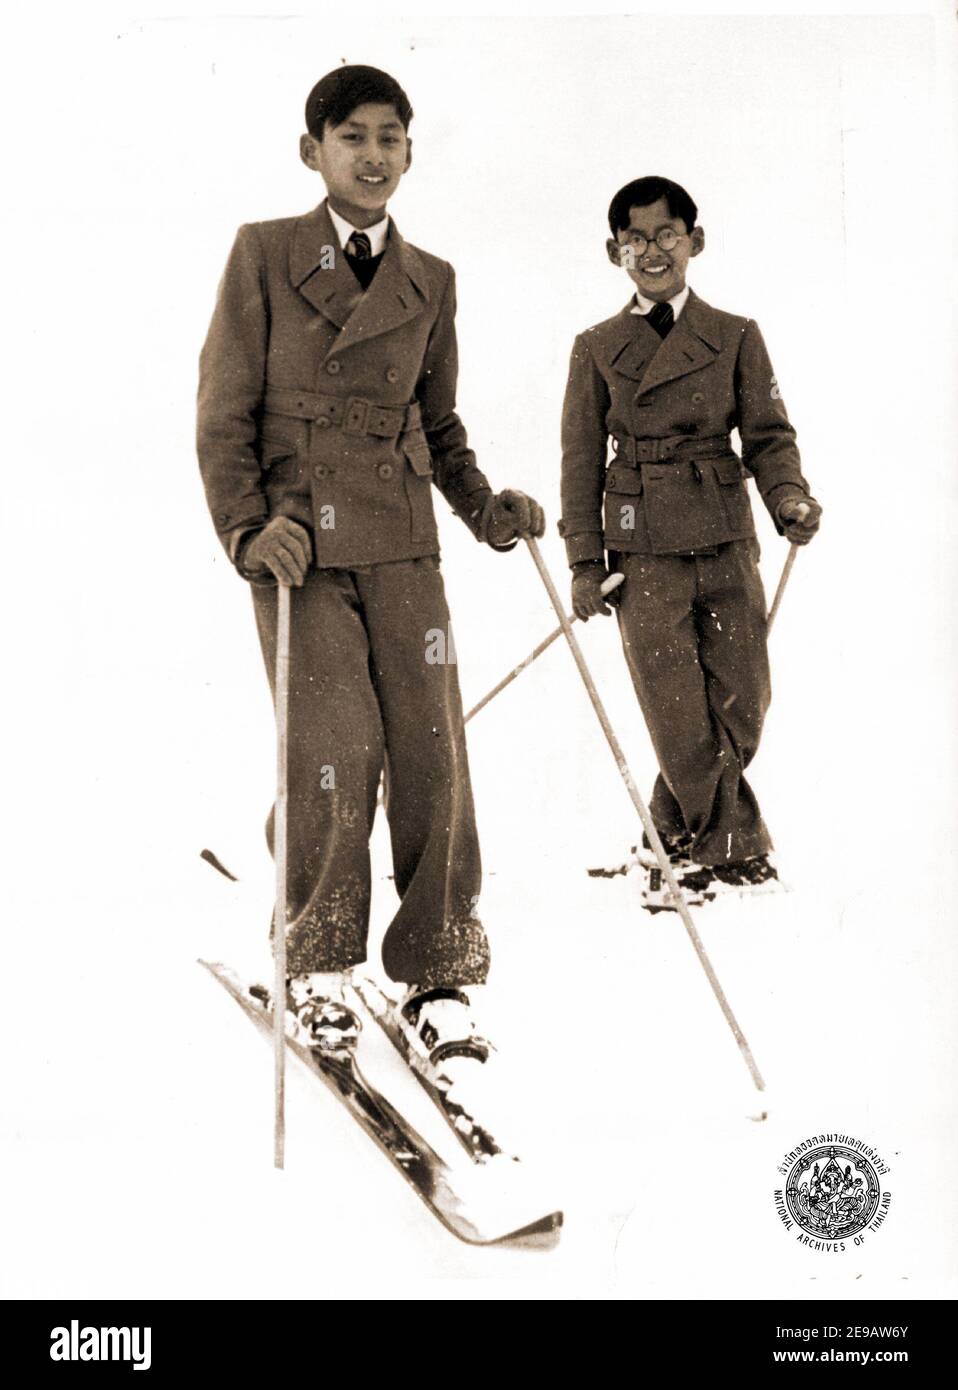 Undatierte Aufnahme von König Bhumibol Adulyadej von Thailand (r) mit seinem Bruder Ananda Mahidol (König Rama VIII) beim Skifahren in Arosa, Schweiz. Foto von ABACAPRESS.COM Stockfoto